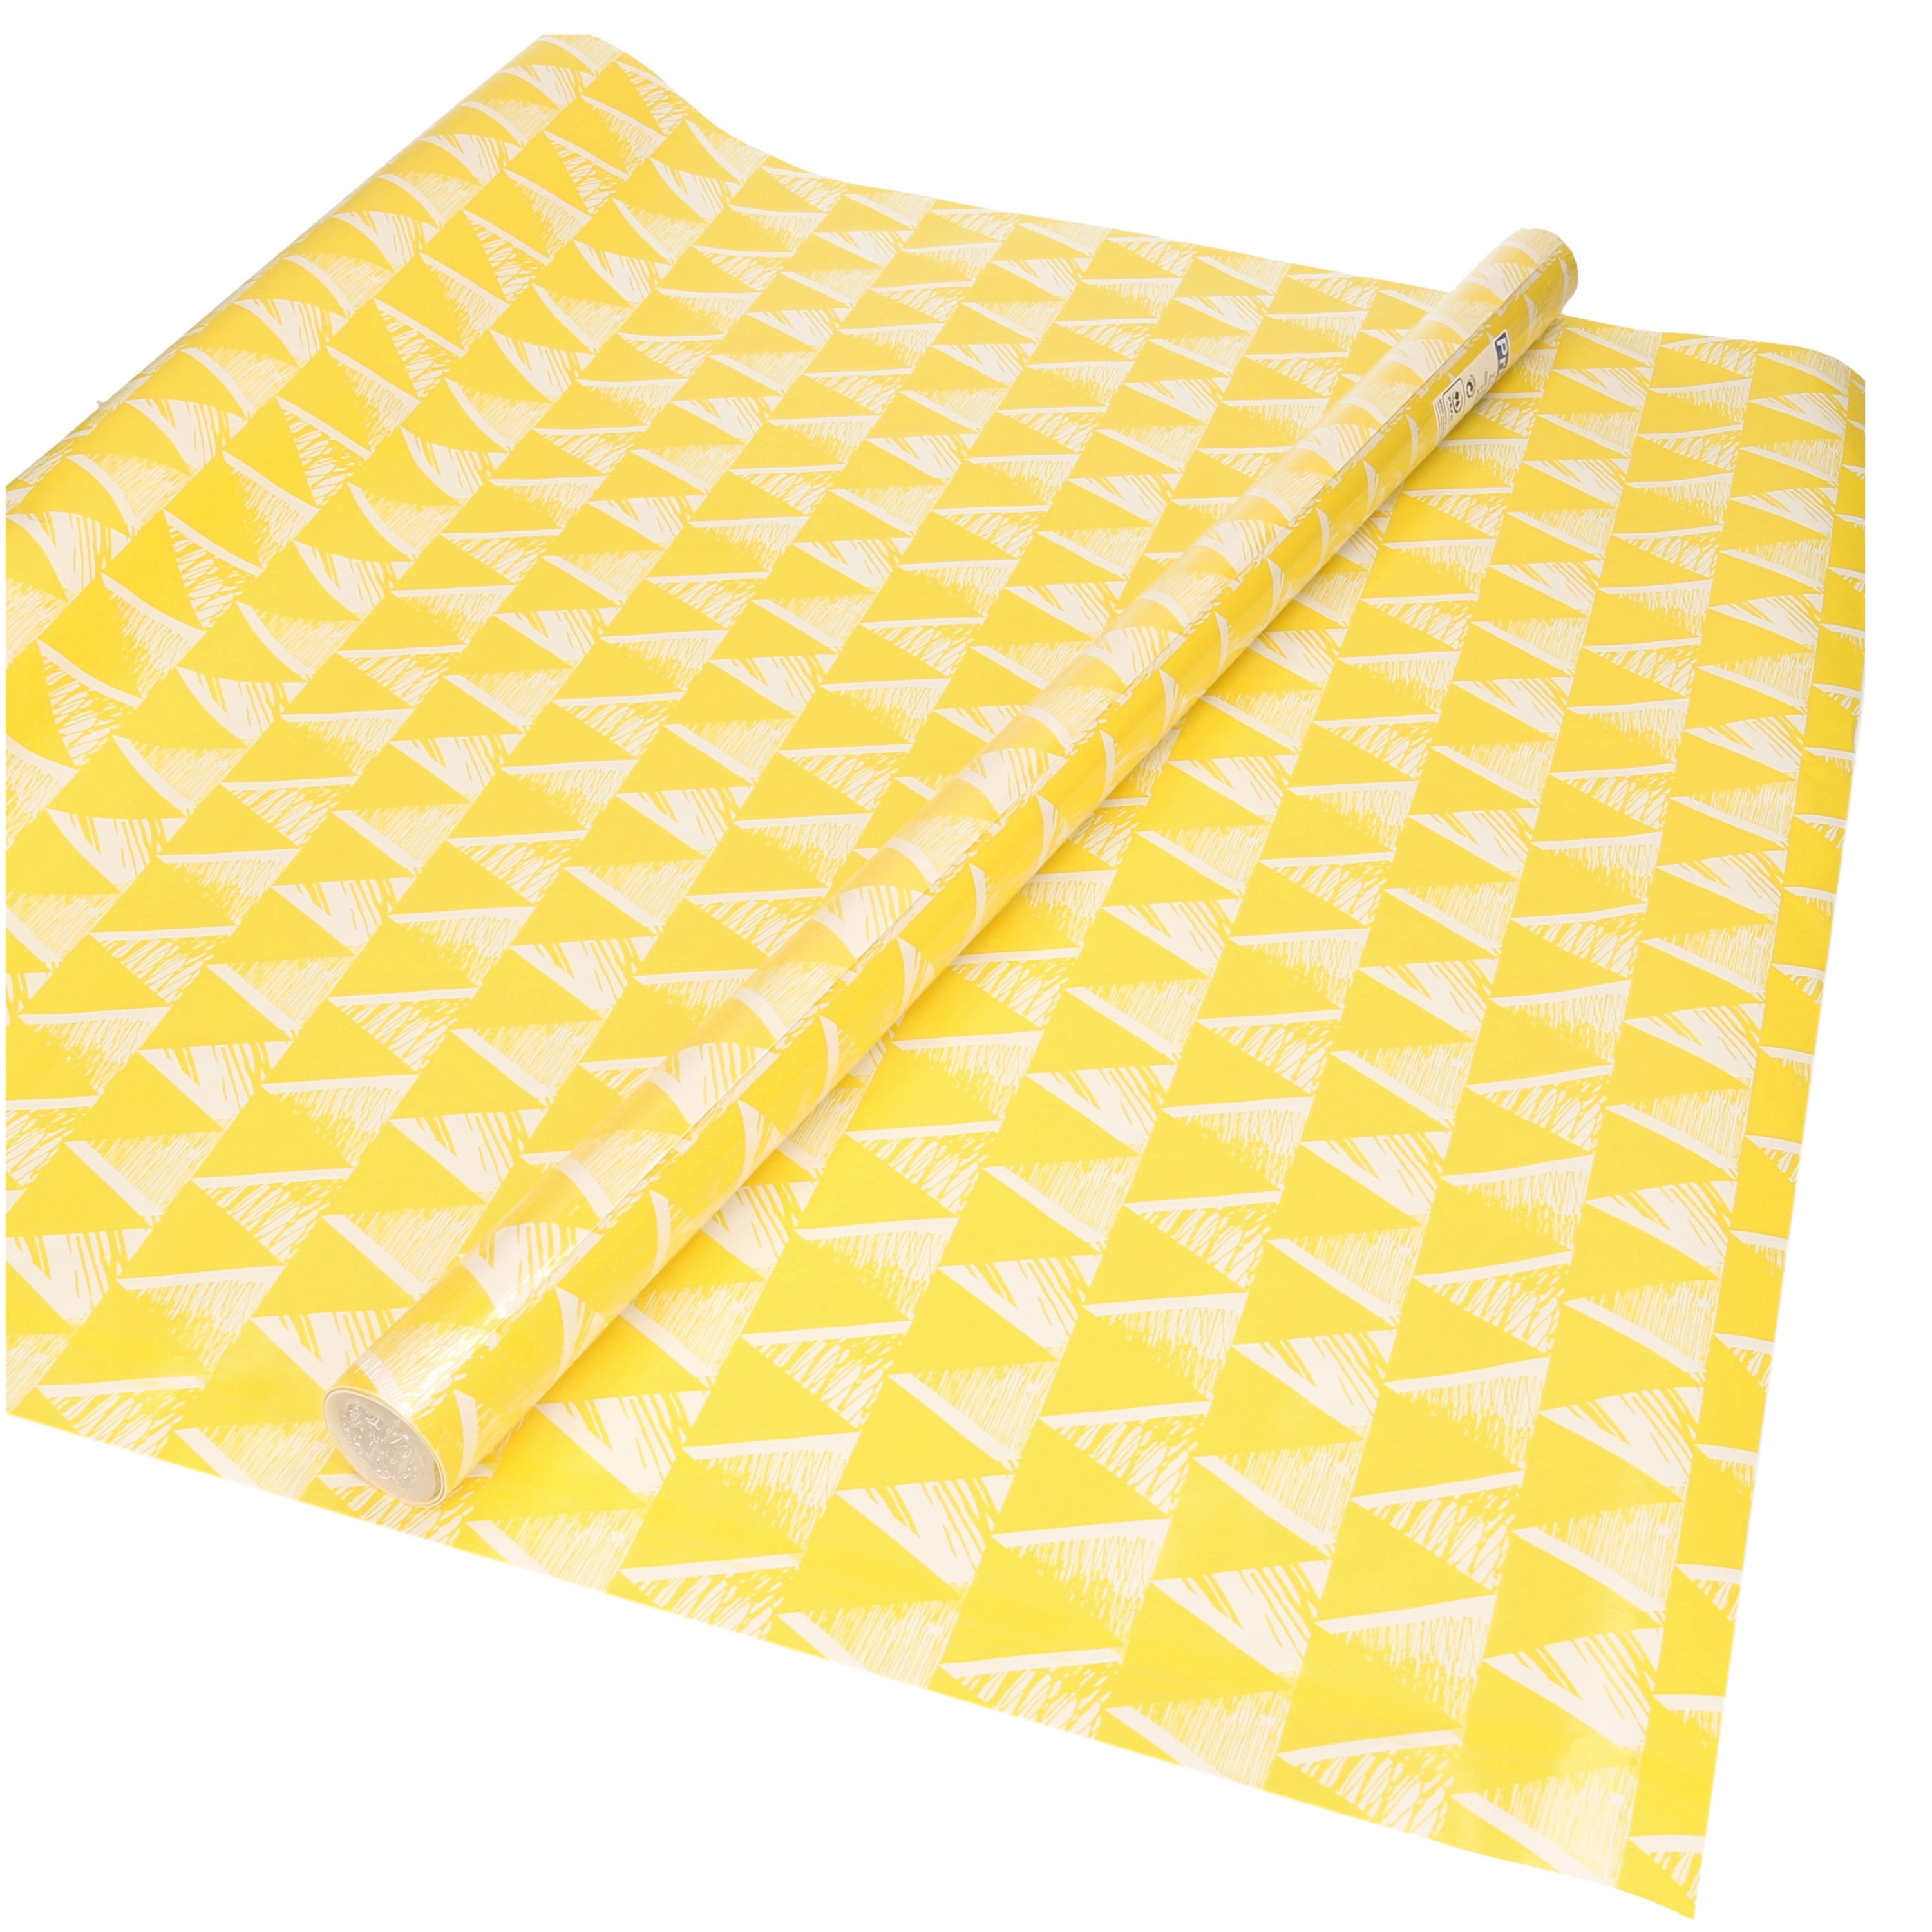 1x Inpakpapier/cadeaupapier geel met witte driehoekjes motief 200 x 70 cm rol